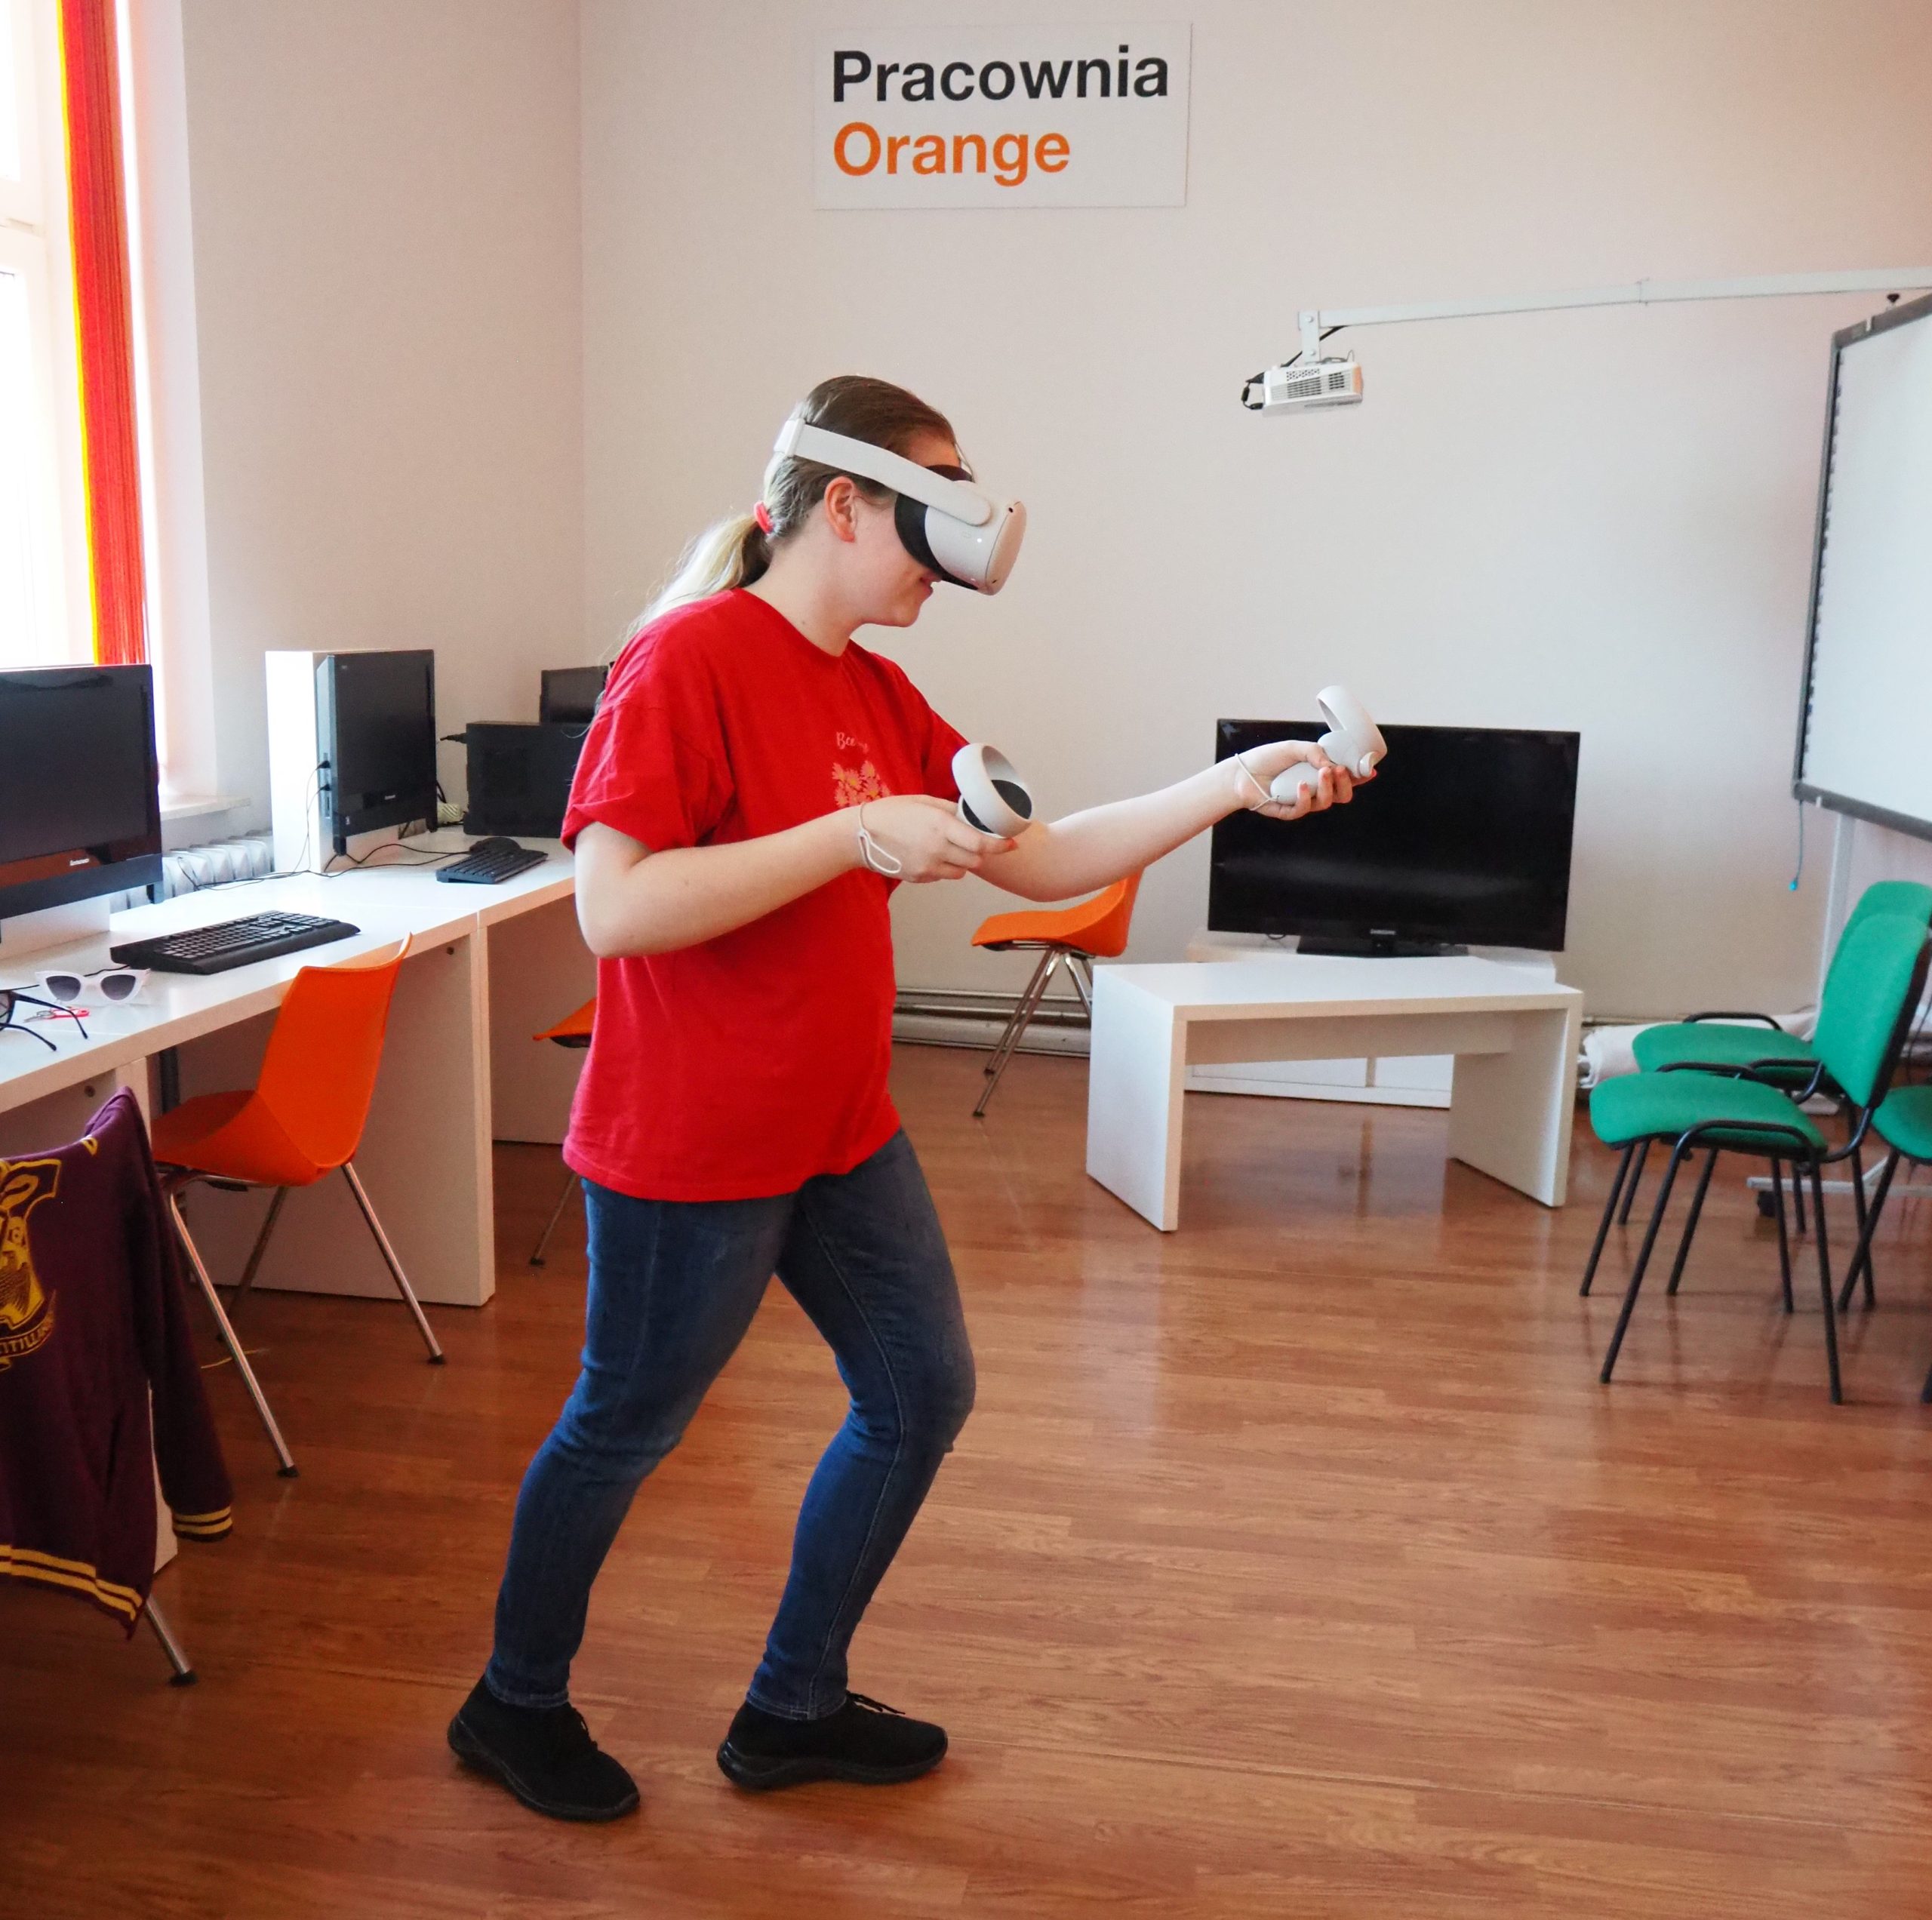 kobieta w czerwonej bluzce w pracowni orange korzysta z gogli do wirtualnej rzeczywistości